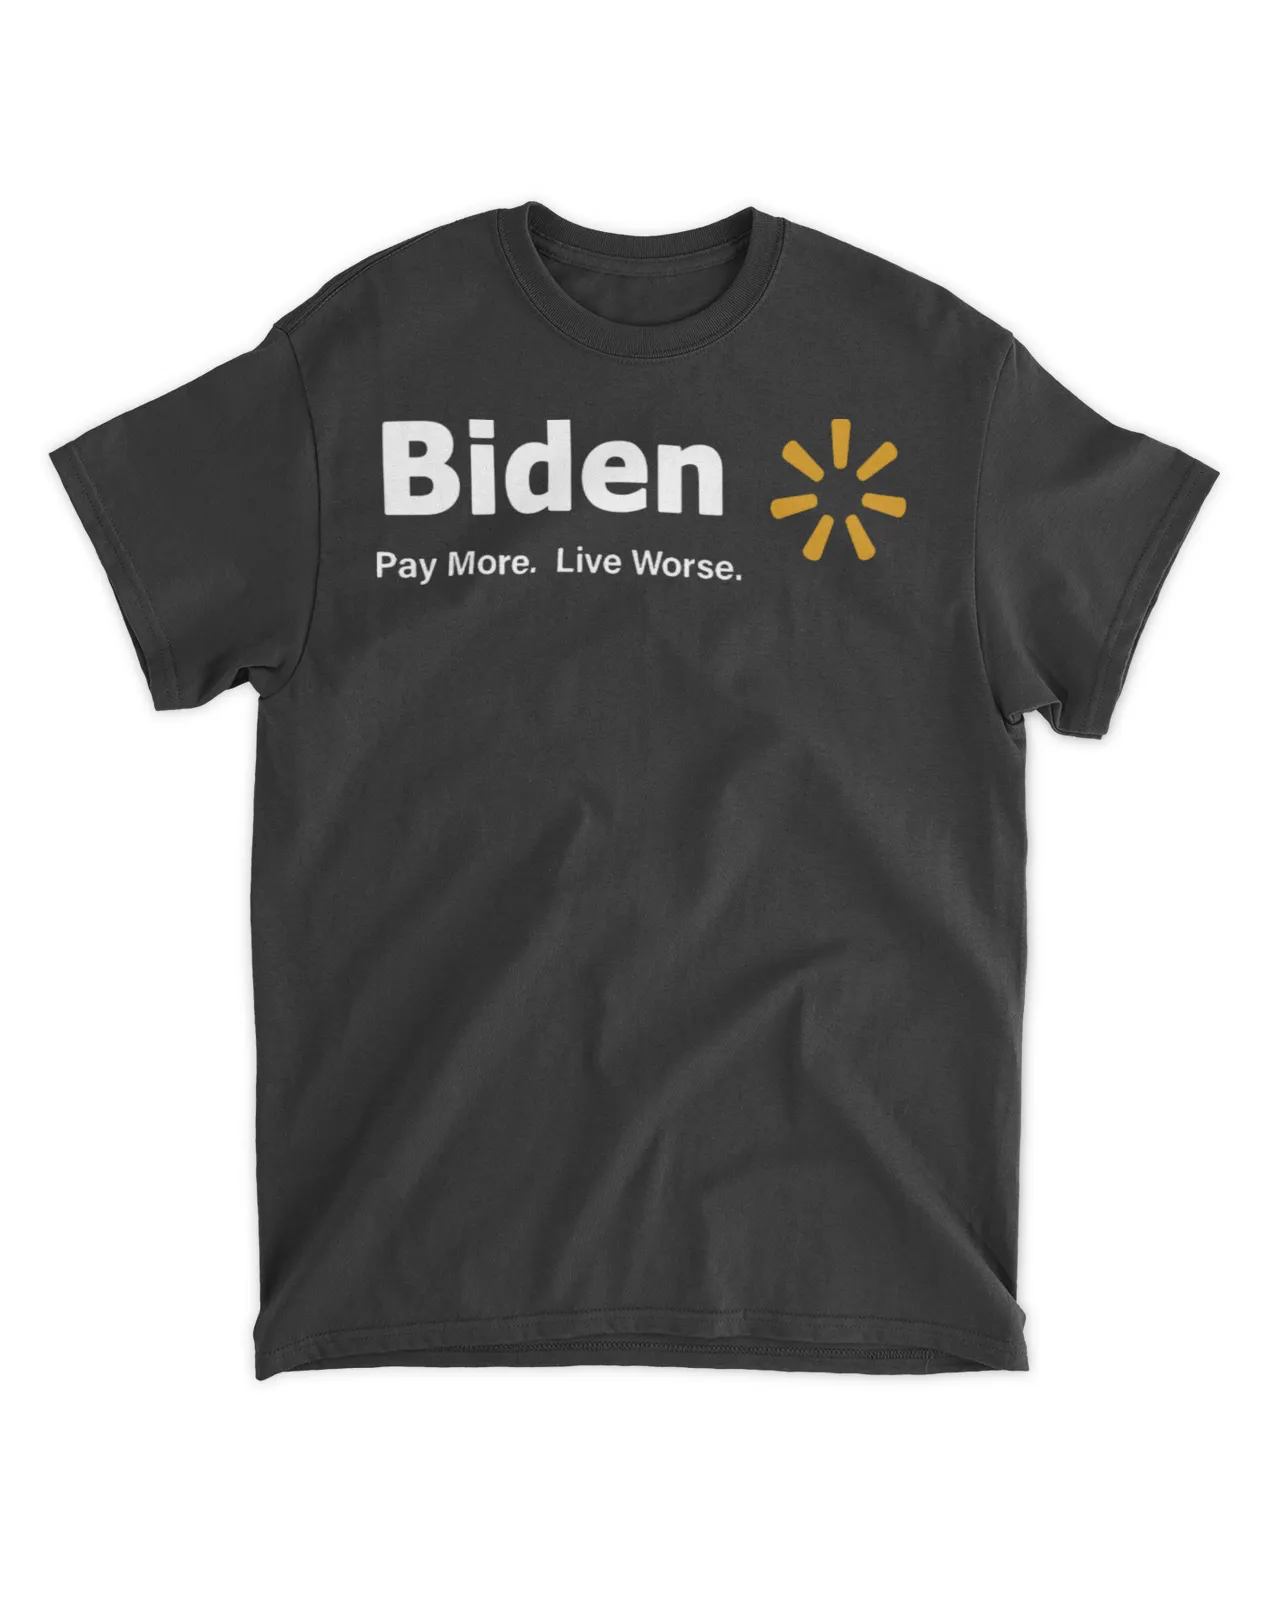  Biden pay more live worse shirt